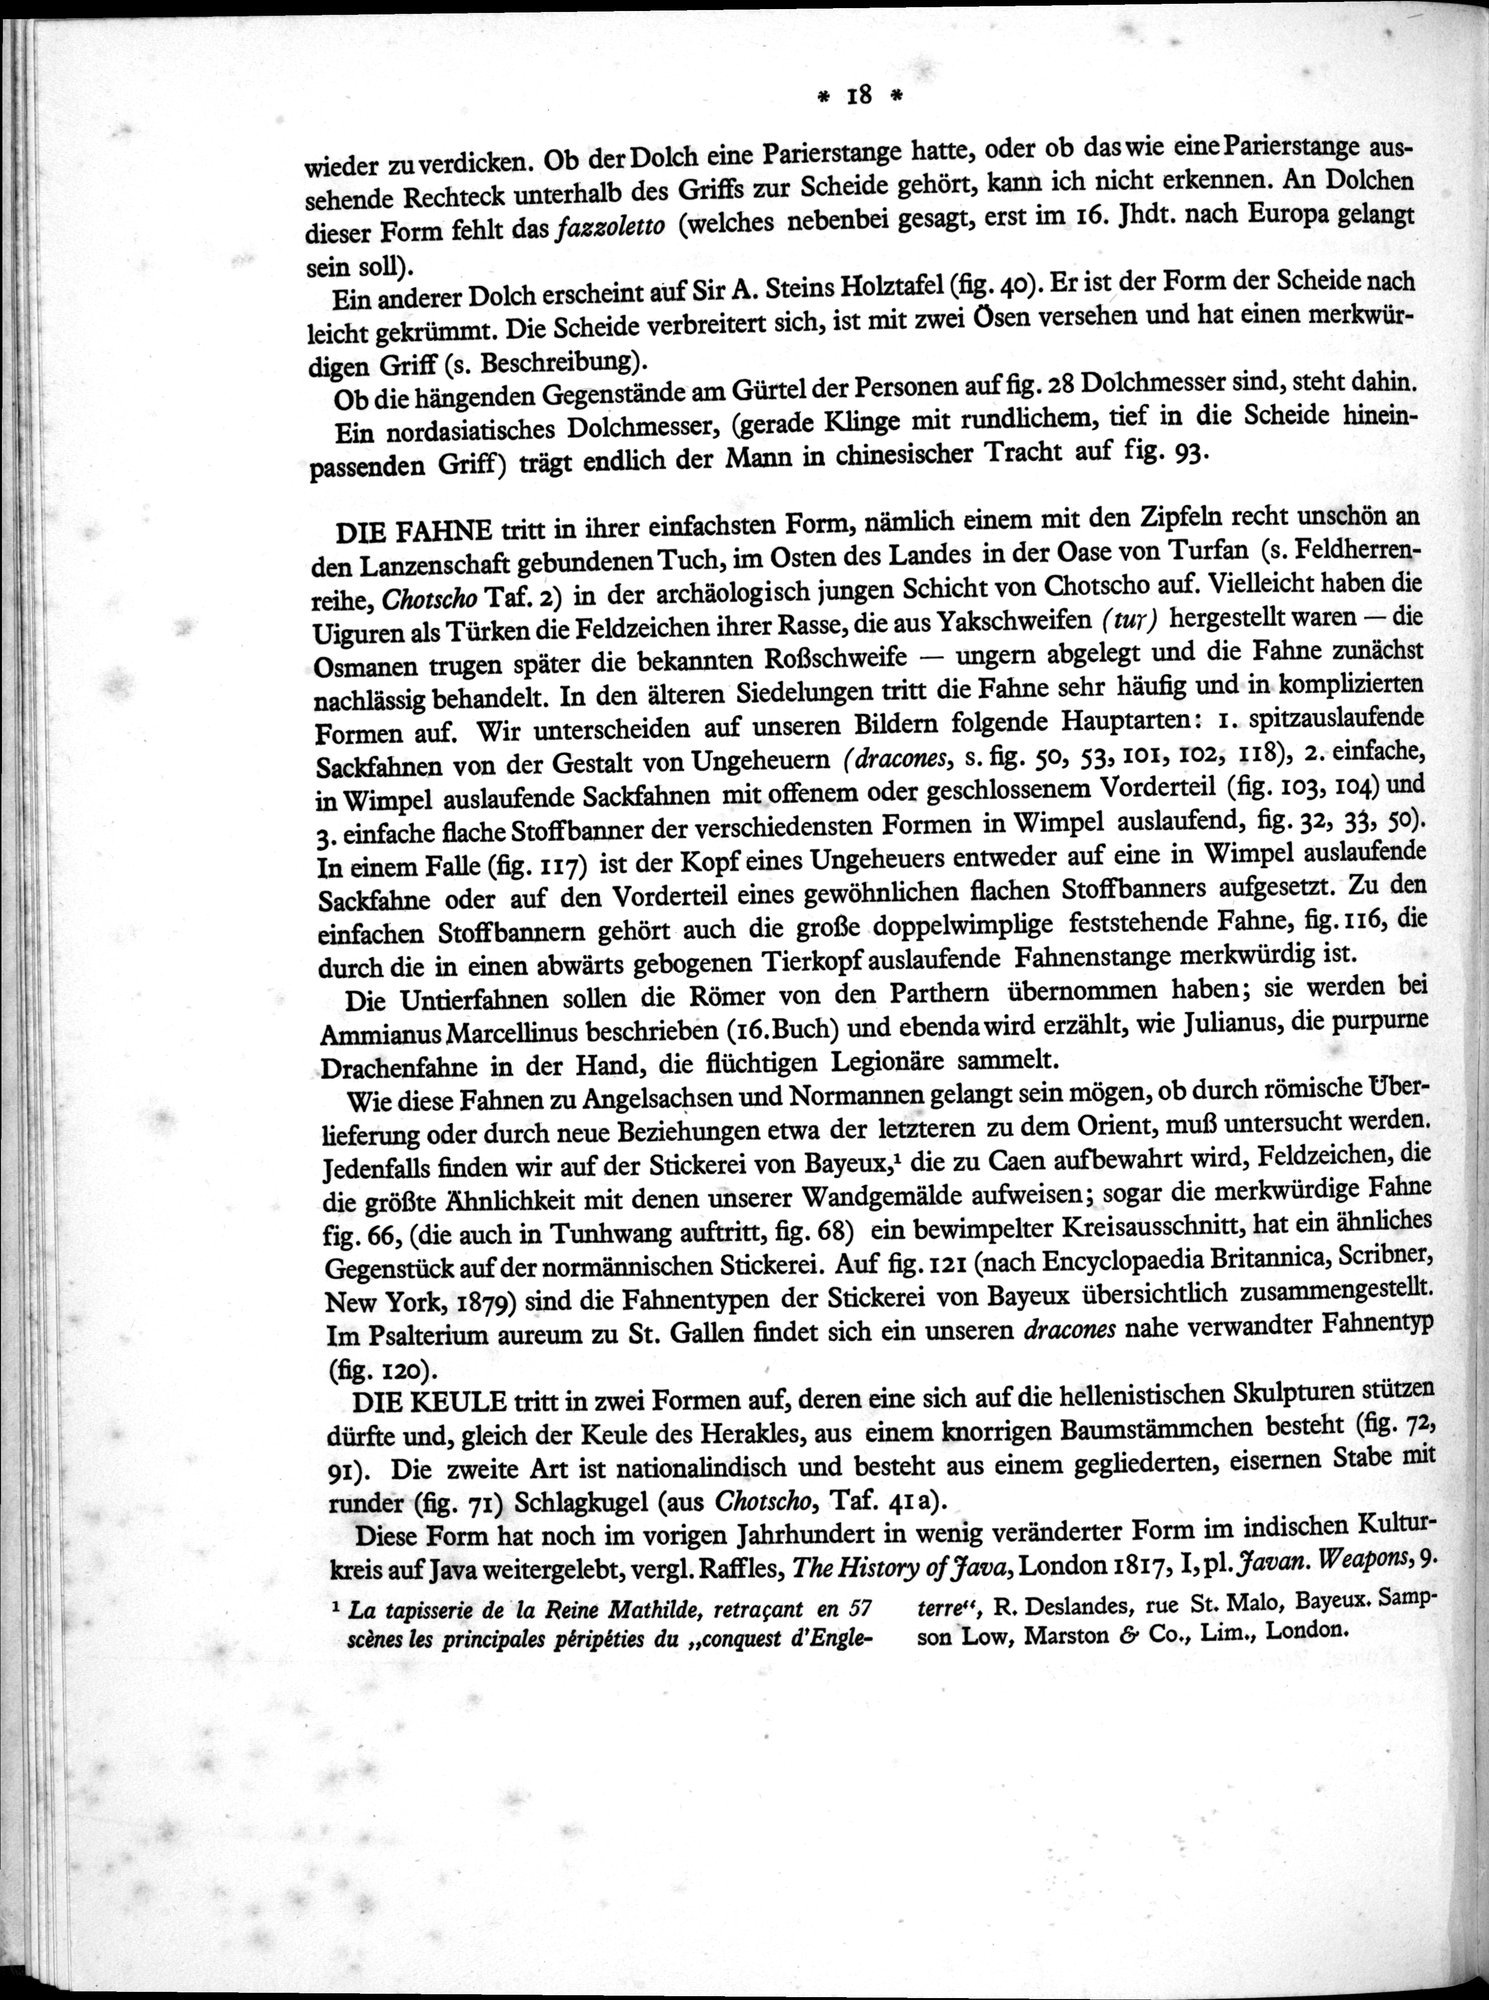 Bilderatlas zur Kunst und Kulturgeschichte Mittel-Asiens : vol.1 / Page 22 (Grayscale High Resolution Image)